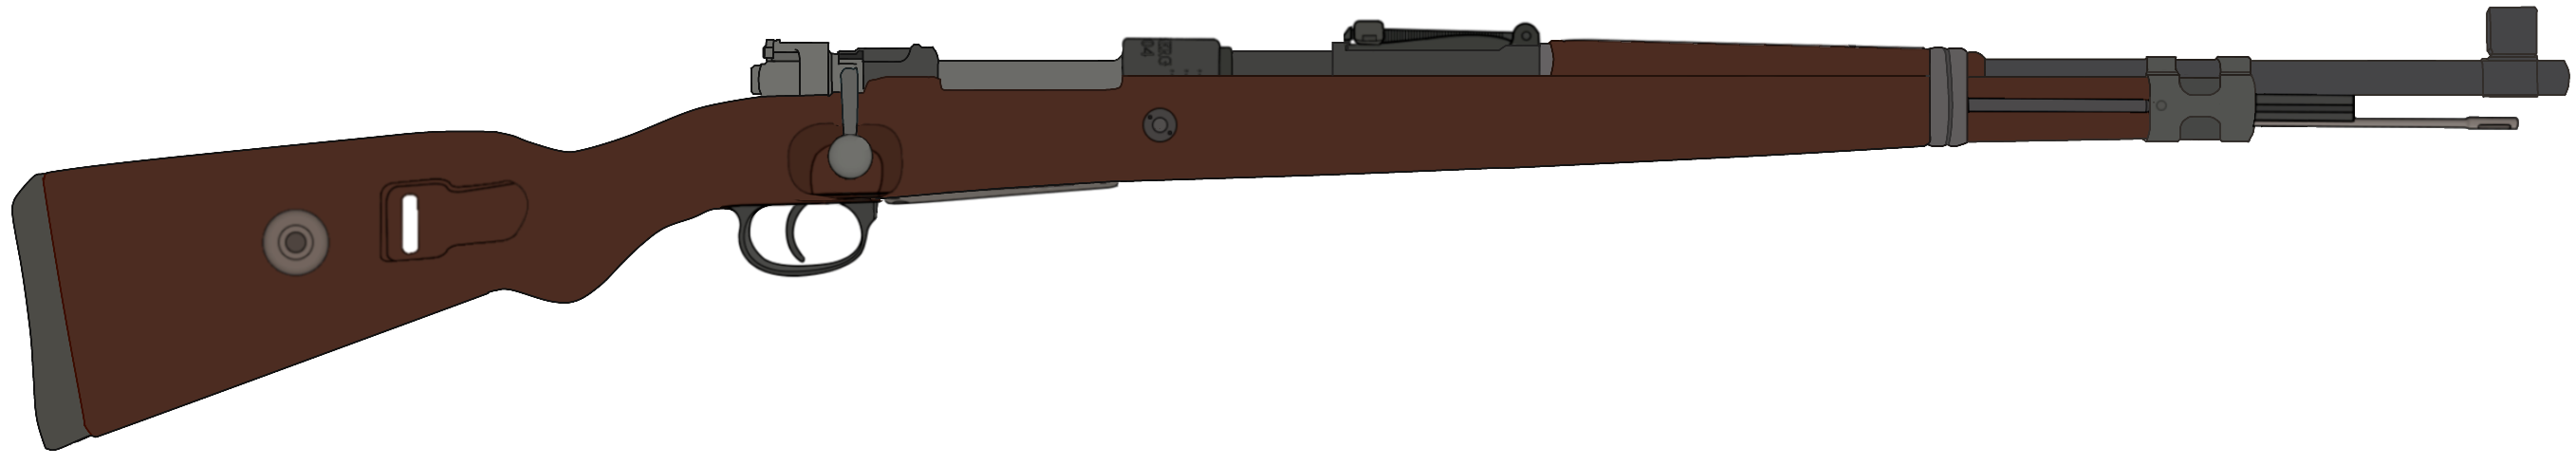 Mauser - Karabiner 98k (1941) Blank Meme Template